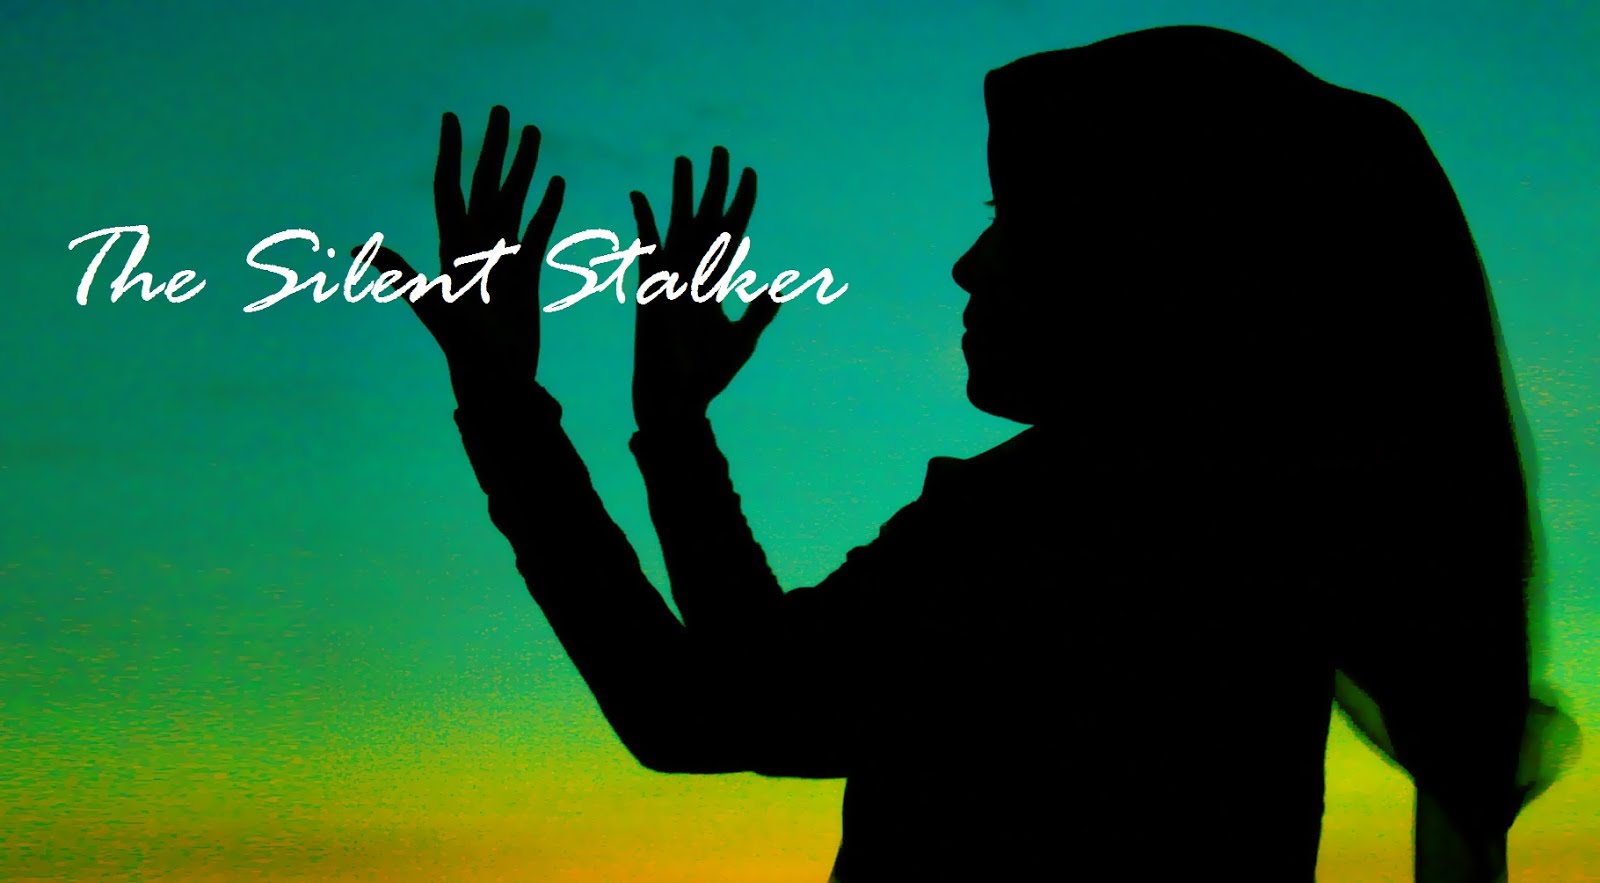 The Silent Stalker